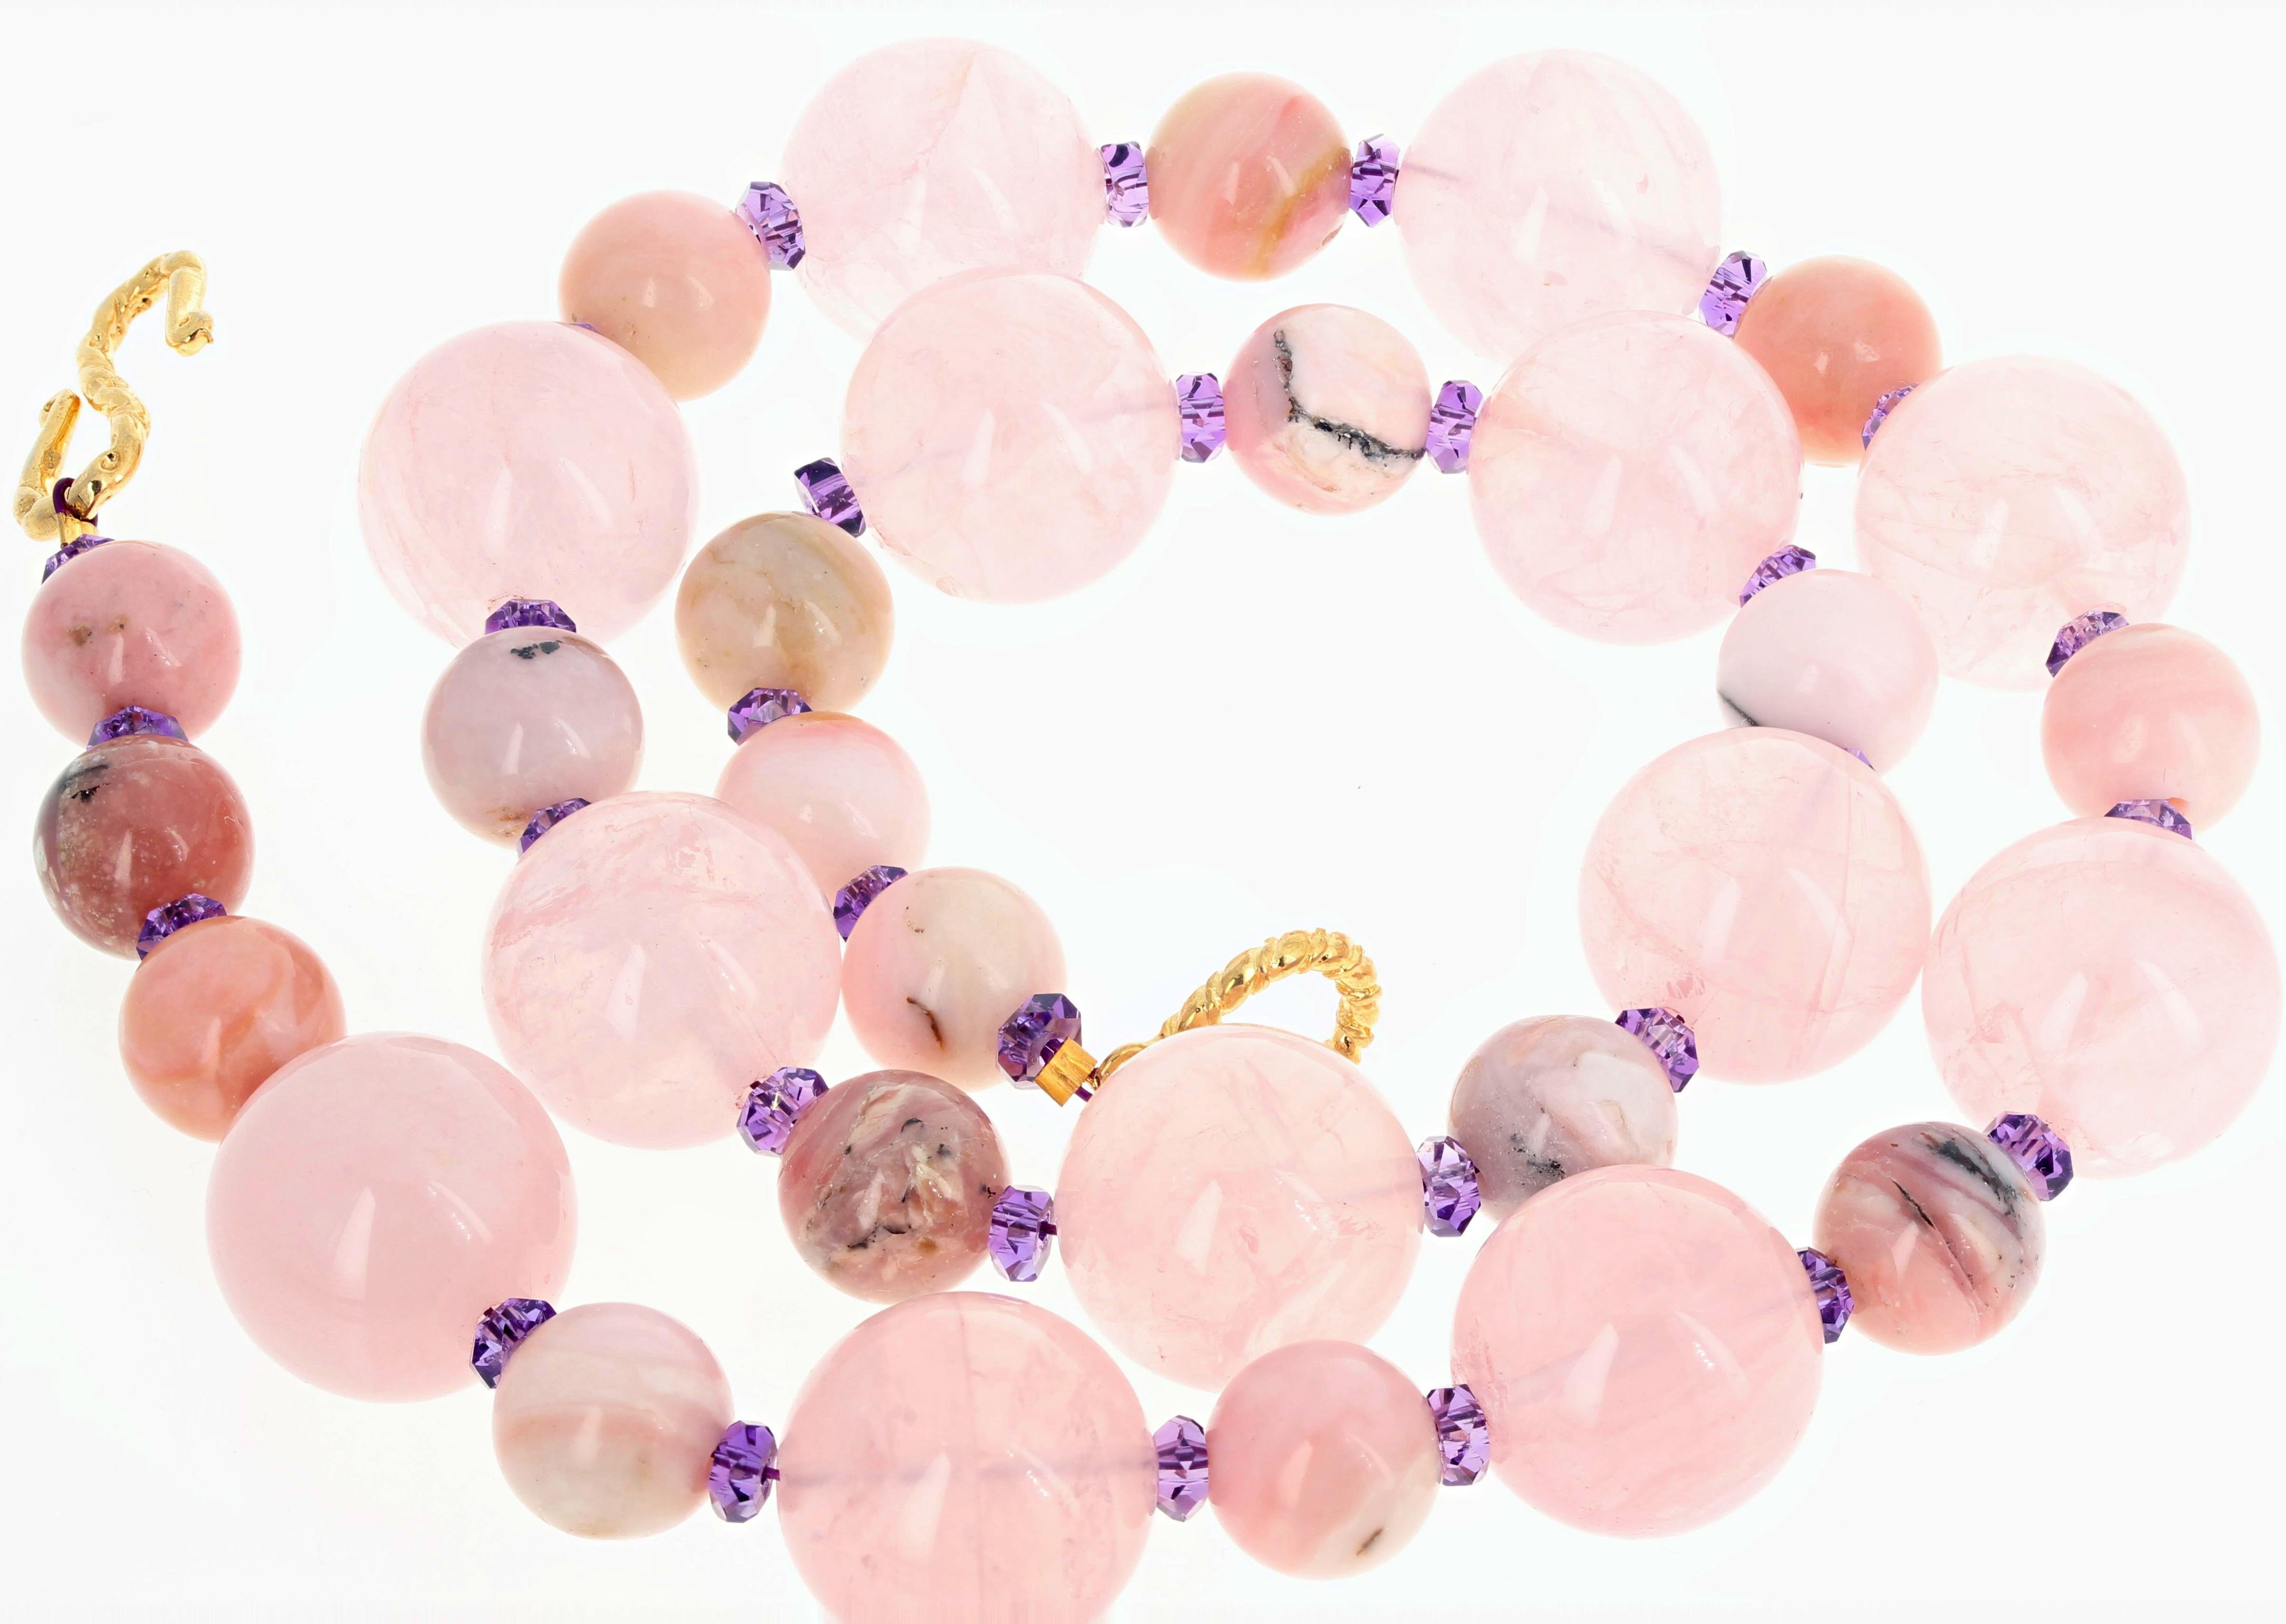 Mixed Cut AJD Elegant Glowing Real Pink Opal, Rose Quartz & Bright Amethyst 19